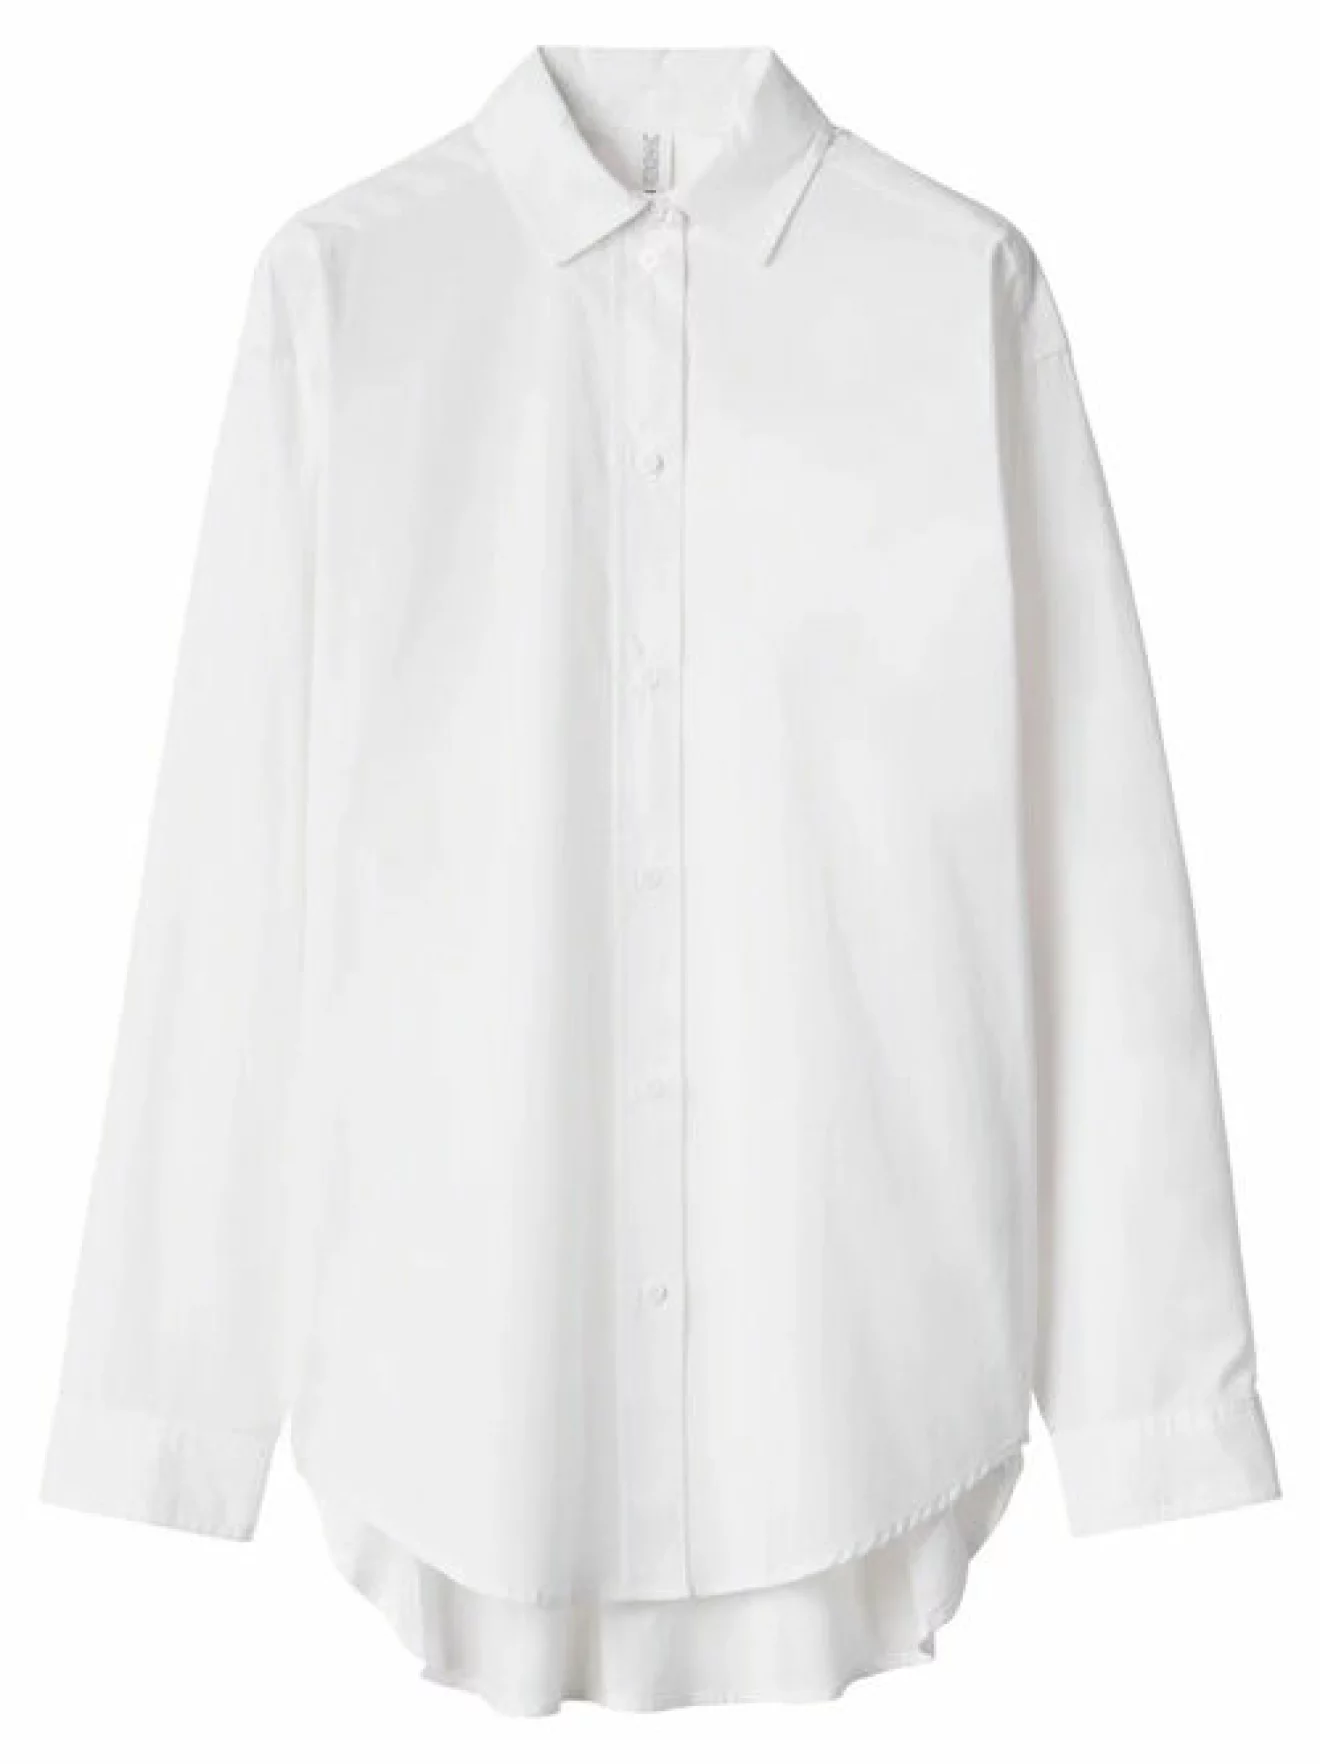 vit skjorta i bomull från CW by Carin Wester